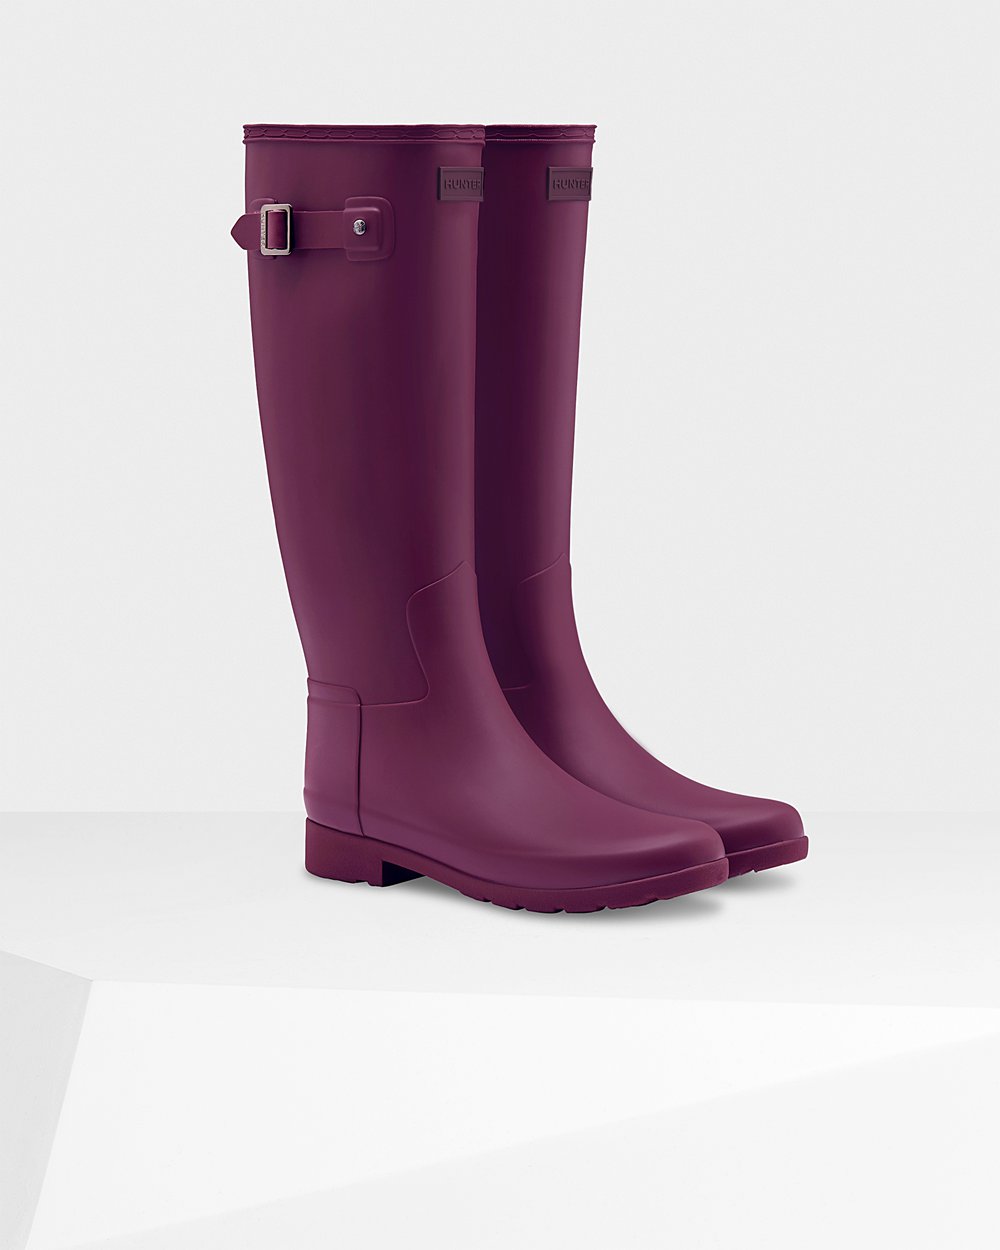 Womens Tall Rain Boots - Hunter Refined Slim Fit (56XLIWRDY) - Purple